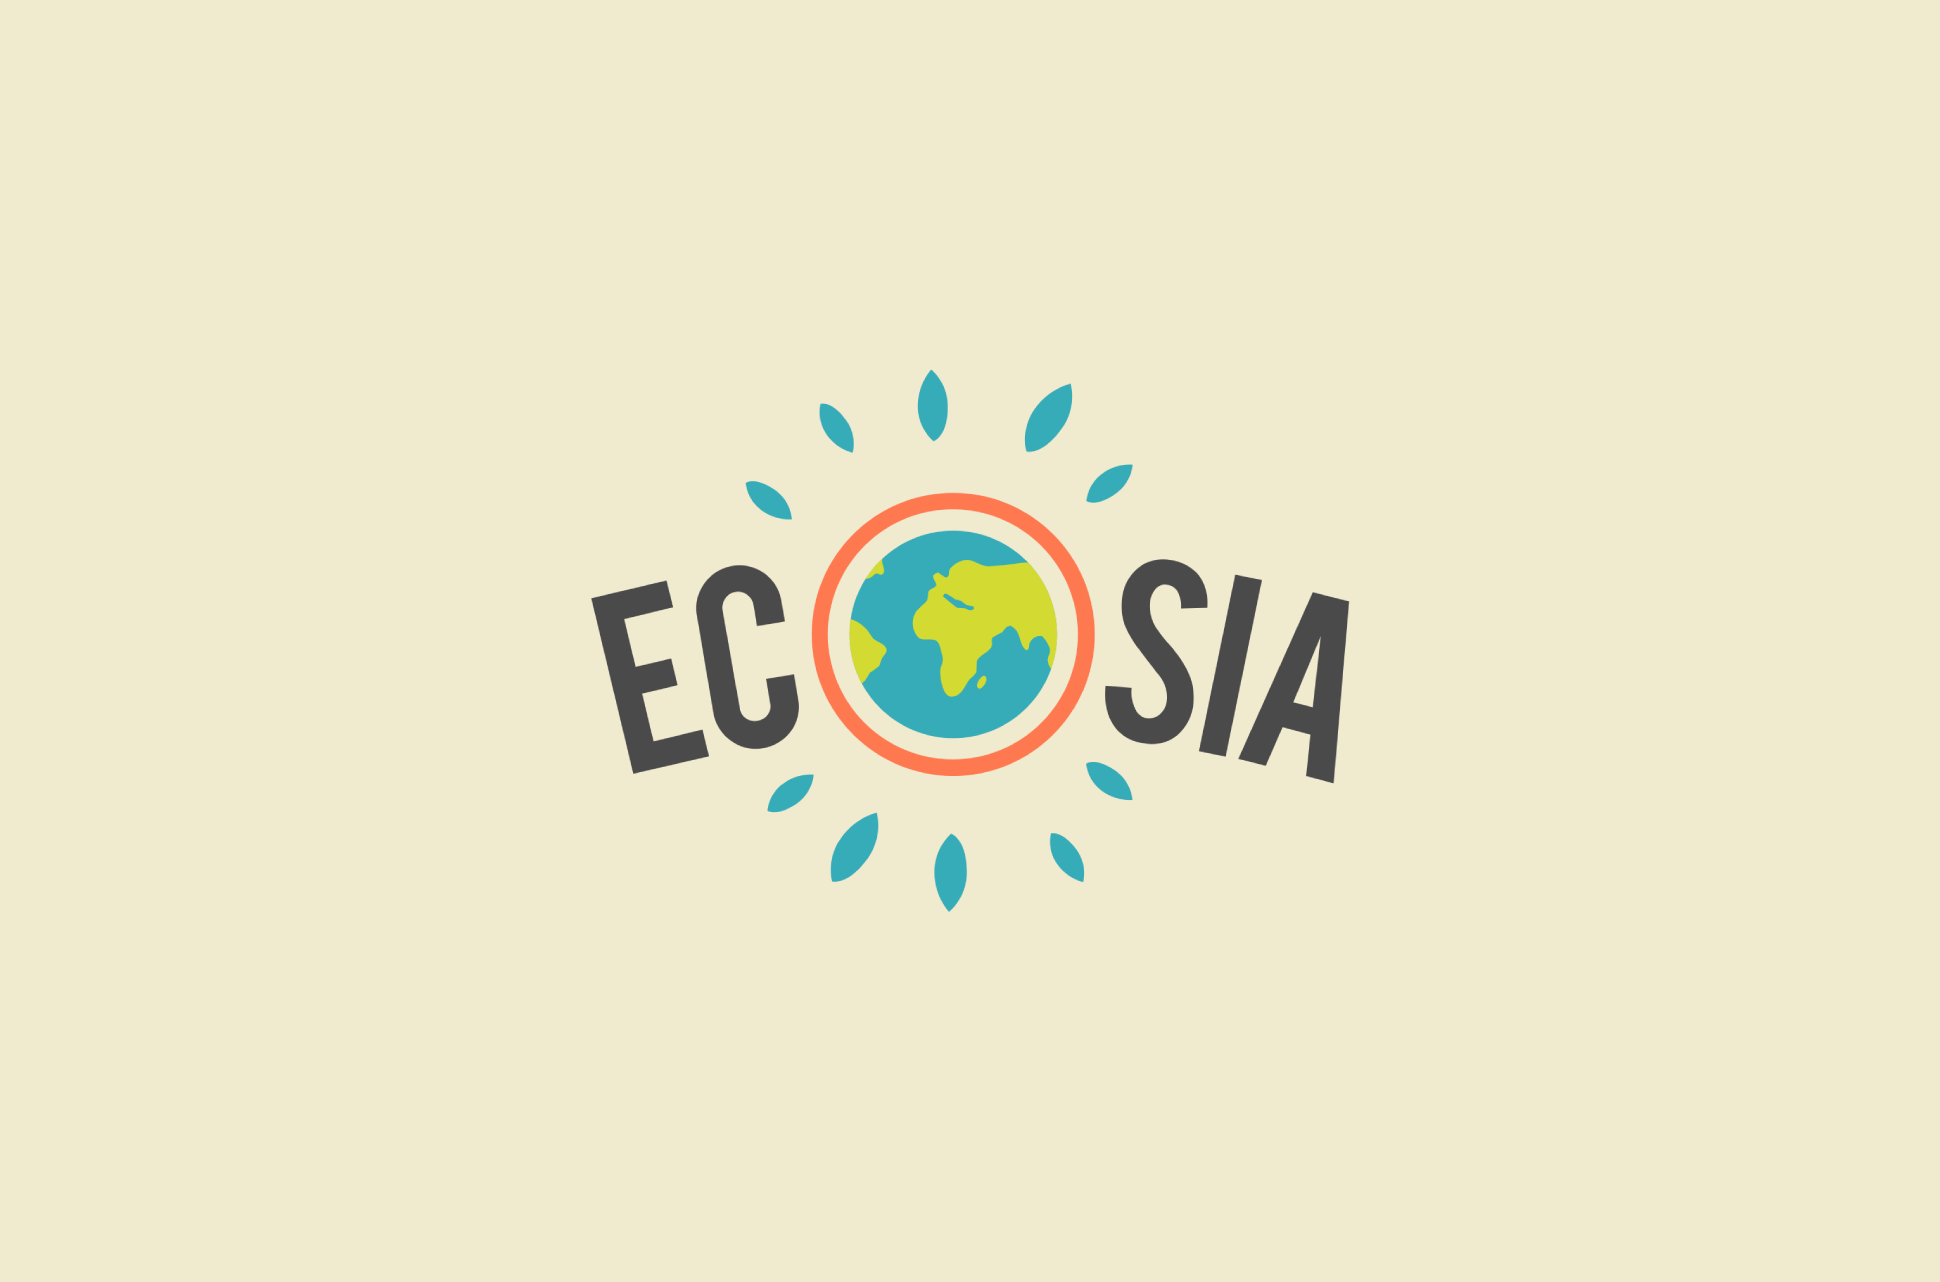 Ecosia logo.